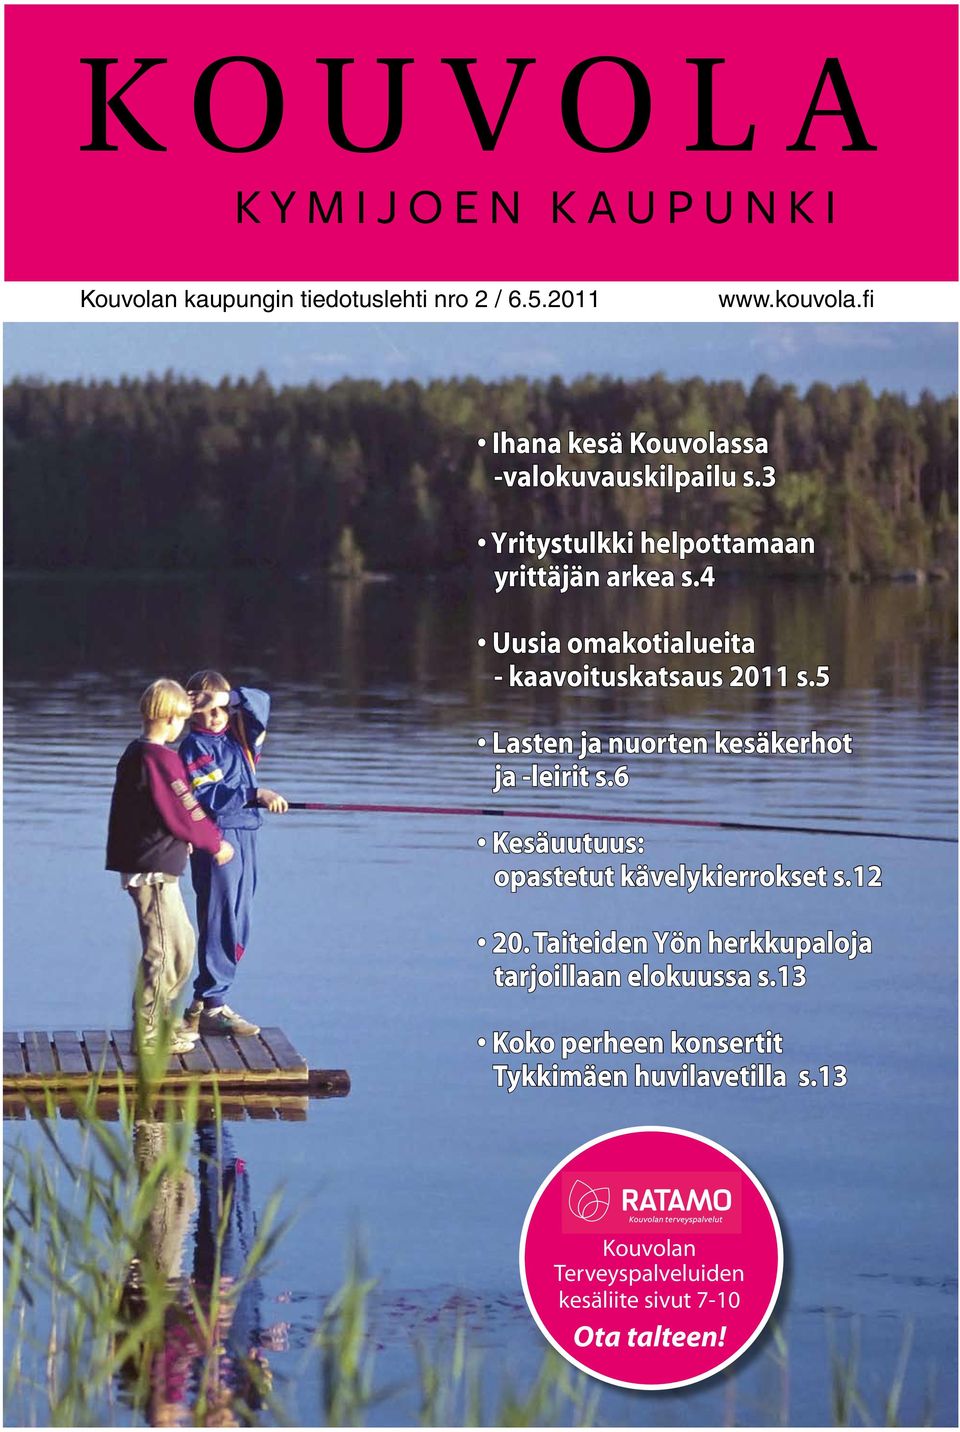 5 Lasten ja nuorten kesäkerhot ja -leirit s.6 Kesäuutuus: opastetut kävelykierrokset s.12 20.